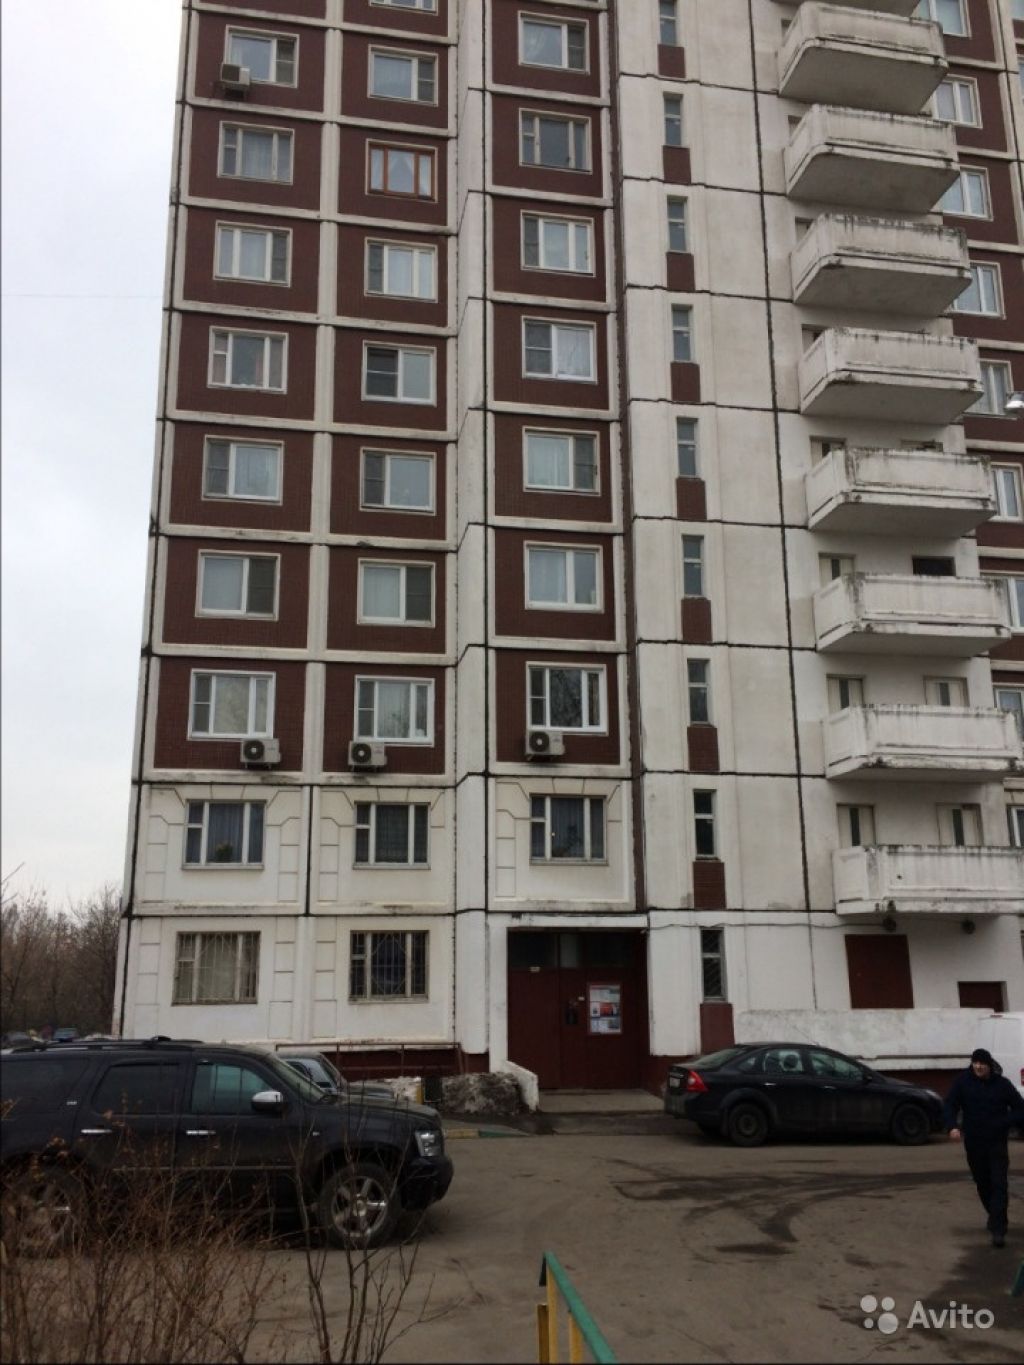 Продам квартиру 1-к квартира 38.2 м² на 7 этаже 22-этажного панельного дома в Москве. Фото 1